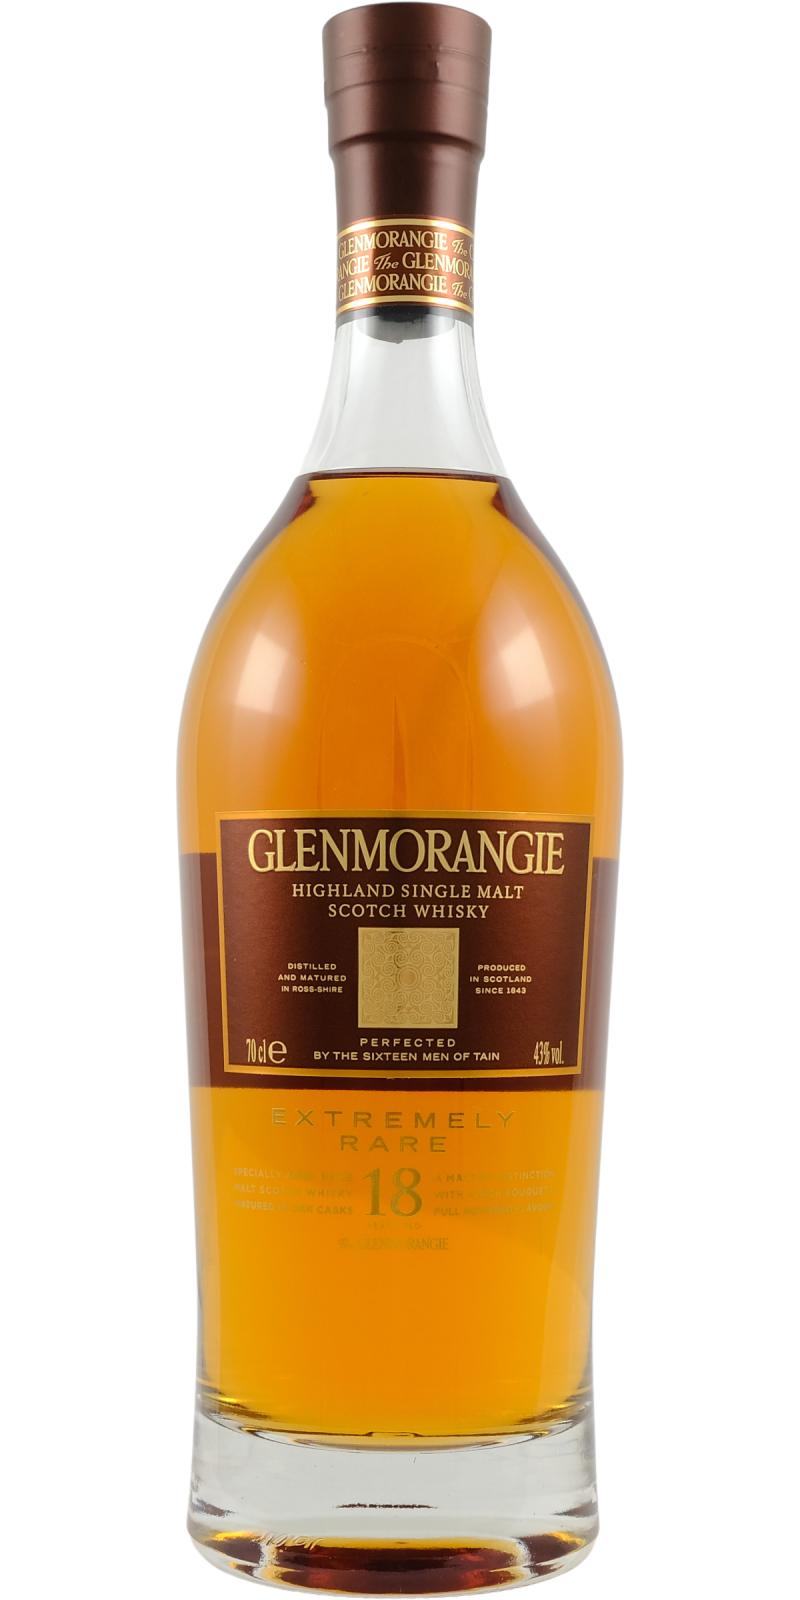 Glenmorangie 18 Year Old Extremely Rare